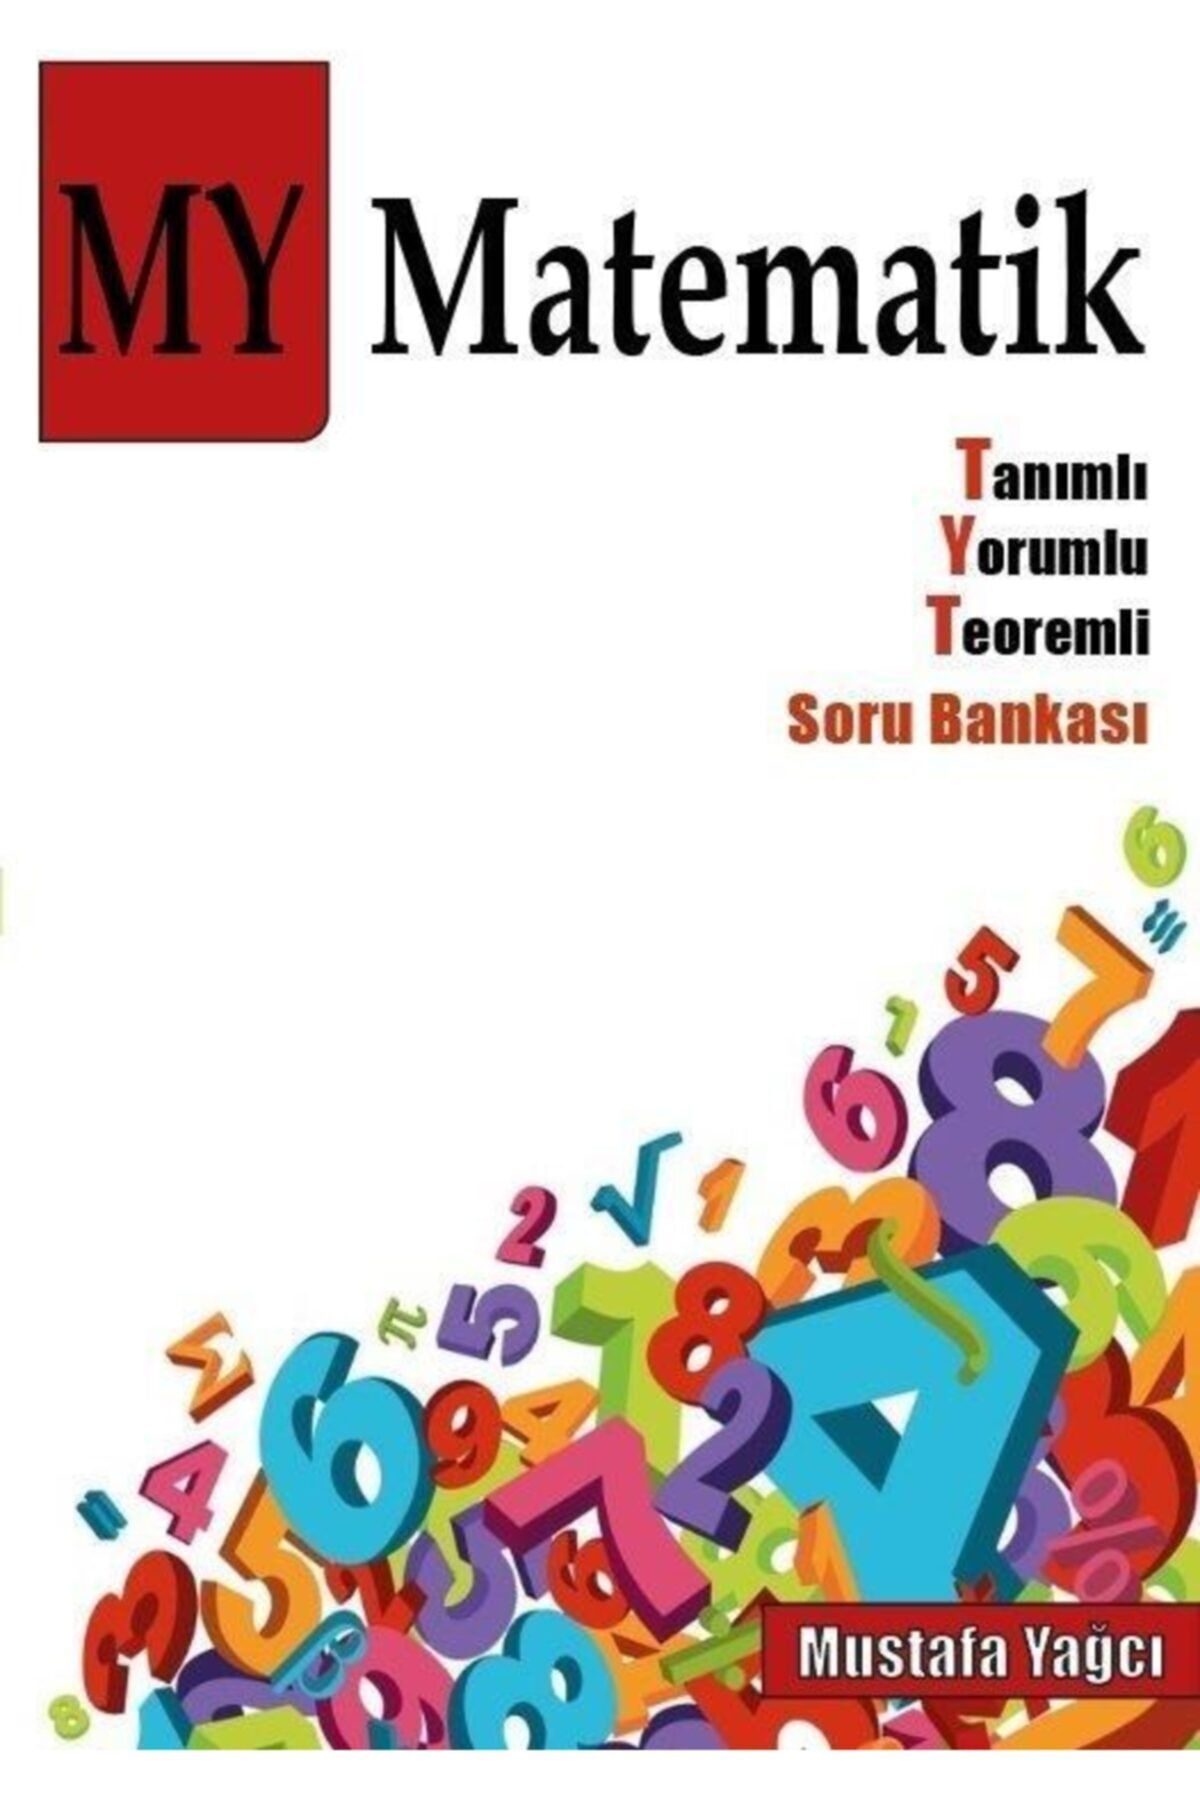 MY 2021-22 Yeni Nesil Tyt Matematik Ve Kia Mustafa Yağcı Ve 345 Yayınları 2 Kitap Set